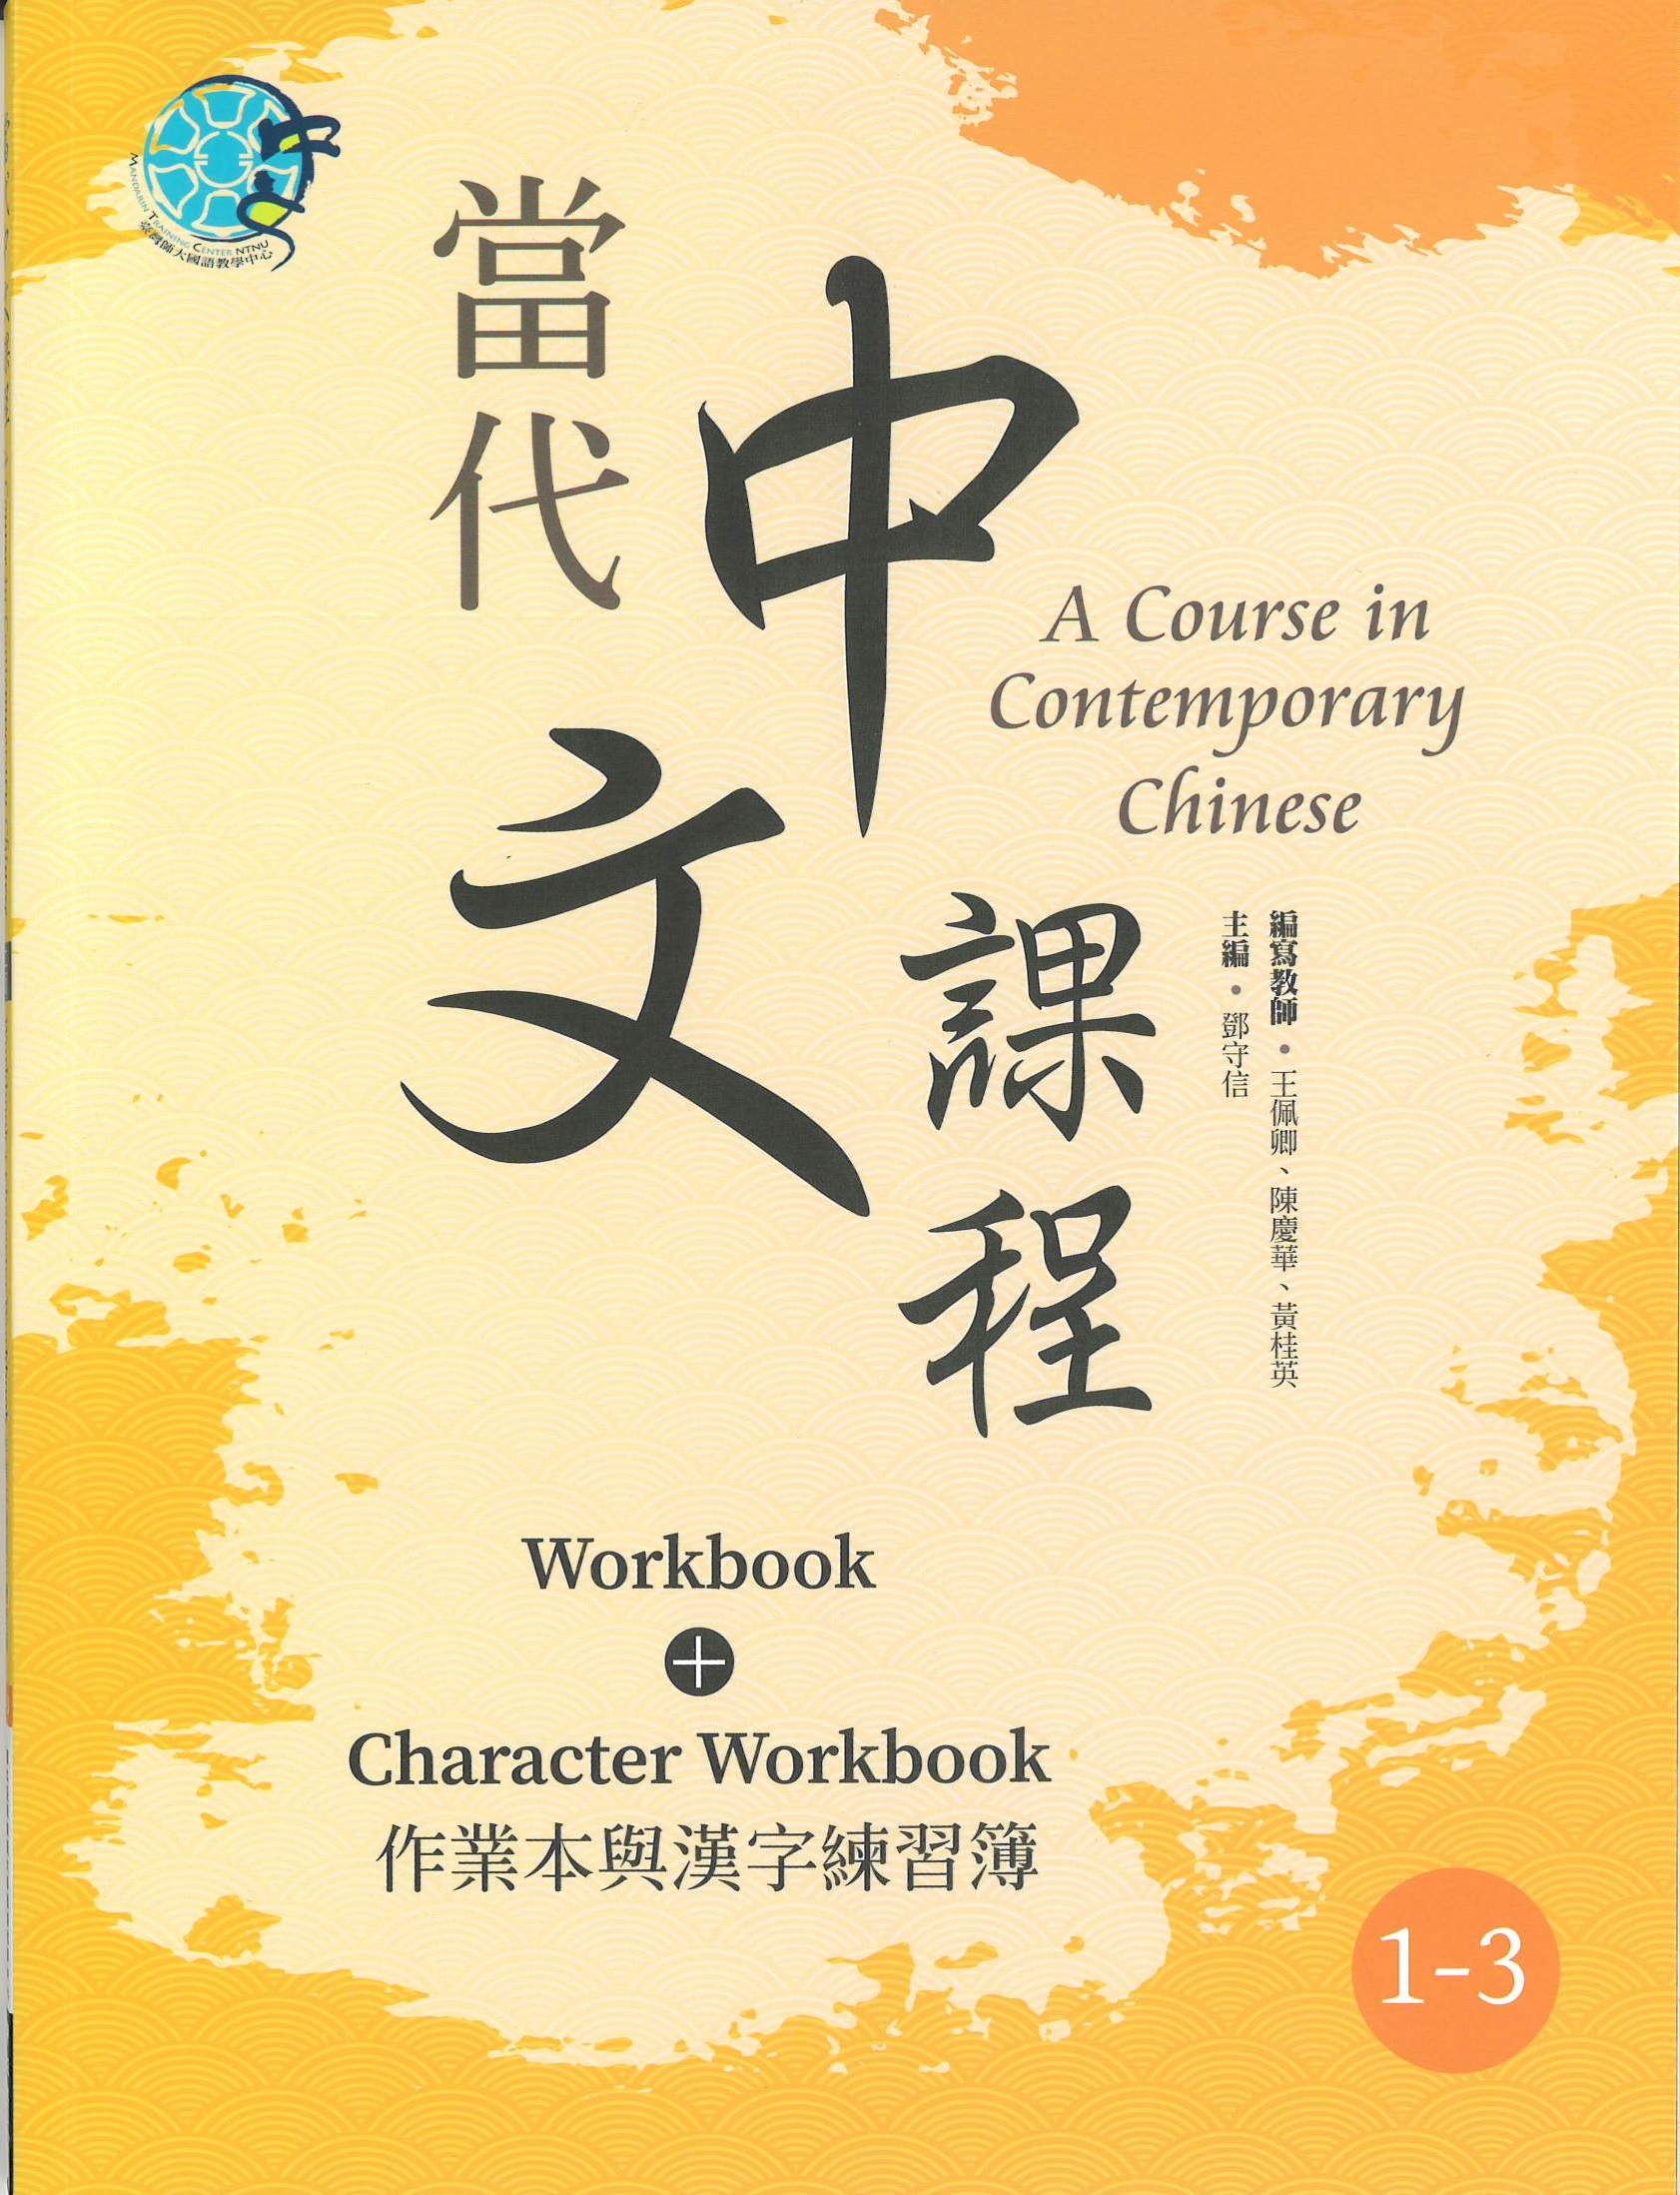 當代中文課程(1-3) : 作業本與漢字練習簿(二版) = A course in contemporary Chinese : workbook+character workbook.